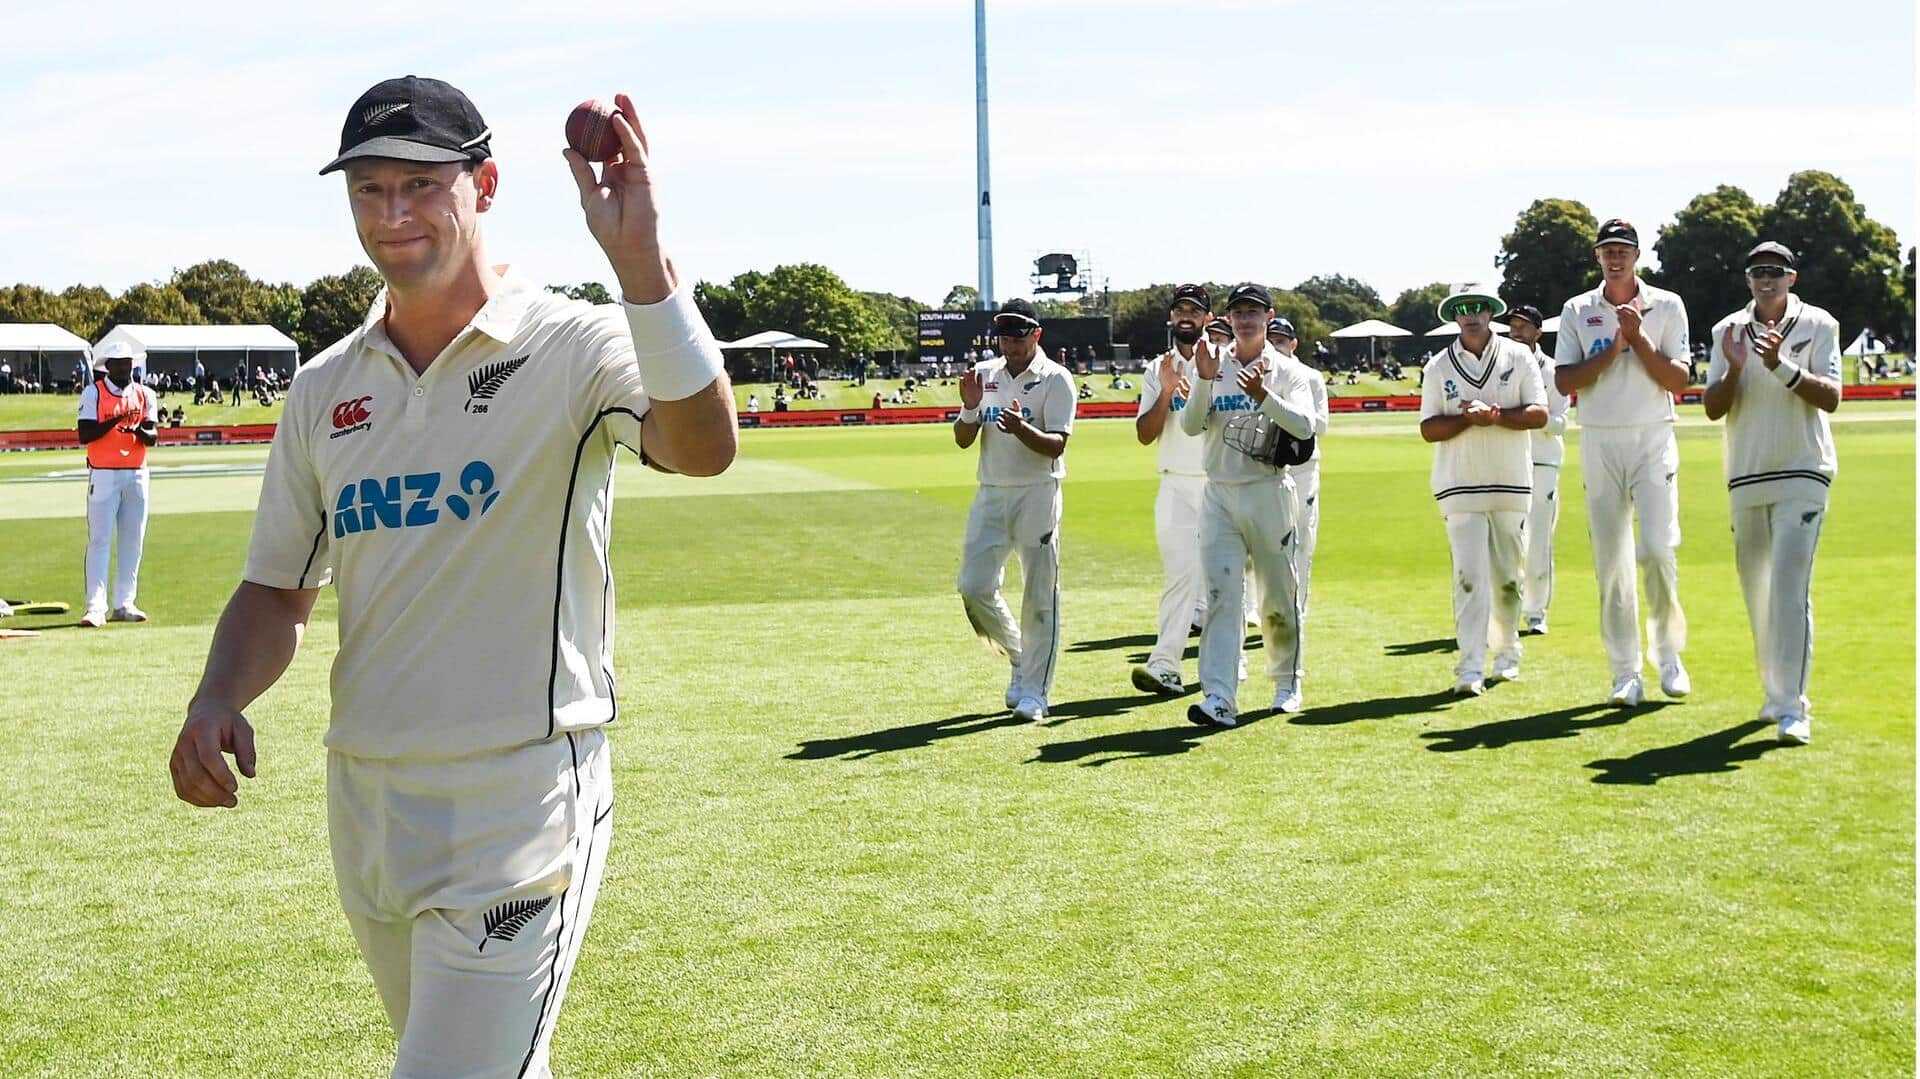 मैट हेनरी ने ऑस्ट्रेलिया के खिलाफ पहली पारी में लिए 7 विकेट, बनाए ये रिकॉर्ड्स 